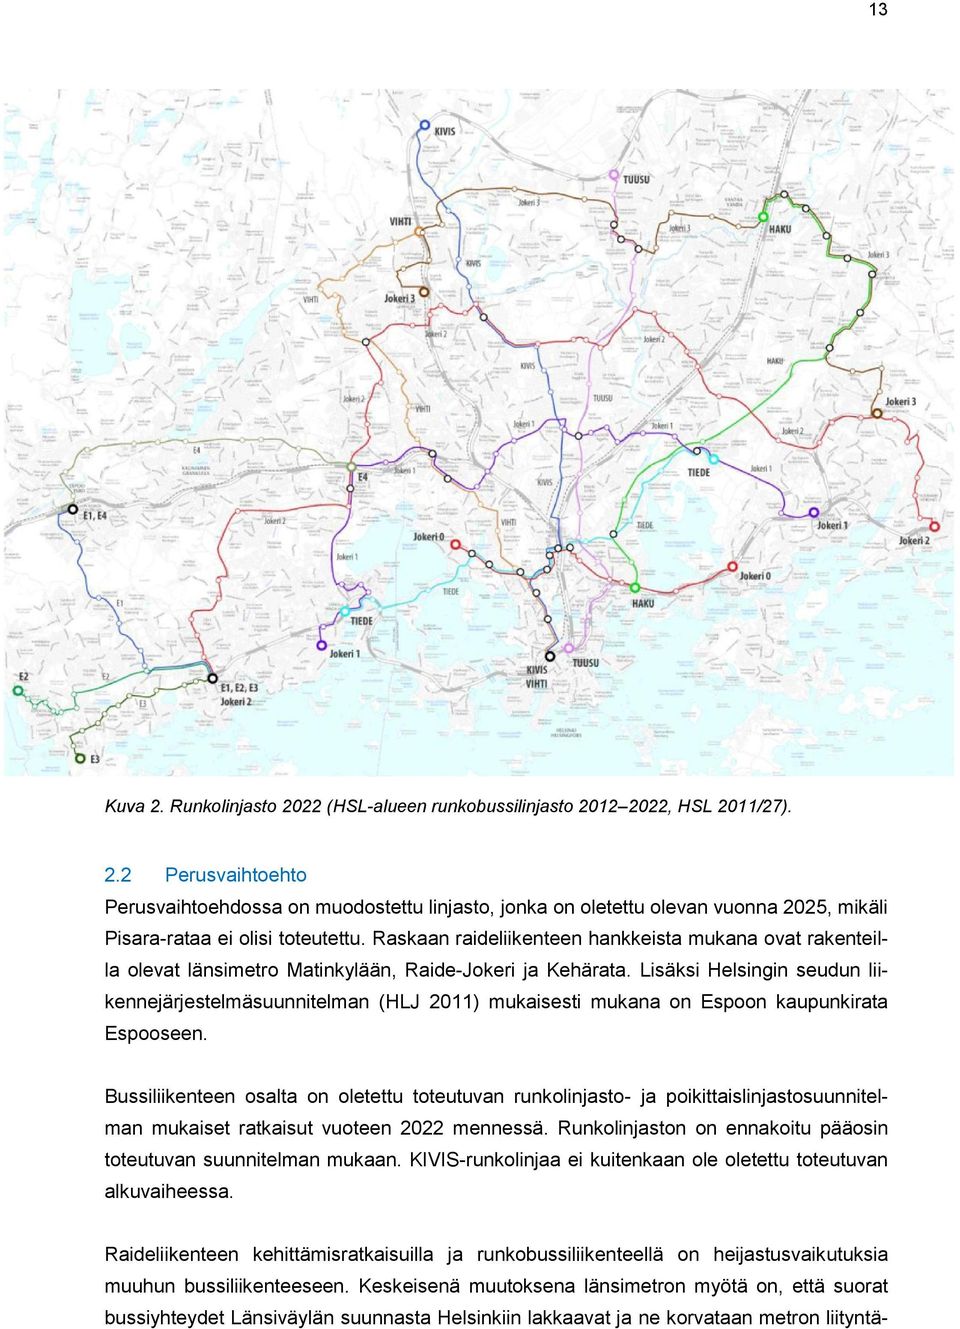 Lisäksi Helsingin seudun liikennejärjestelmäsuunnitelman (HLJ 2011) mukaisesti mukana on Espoon kaupunkirata Espooseen.